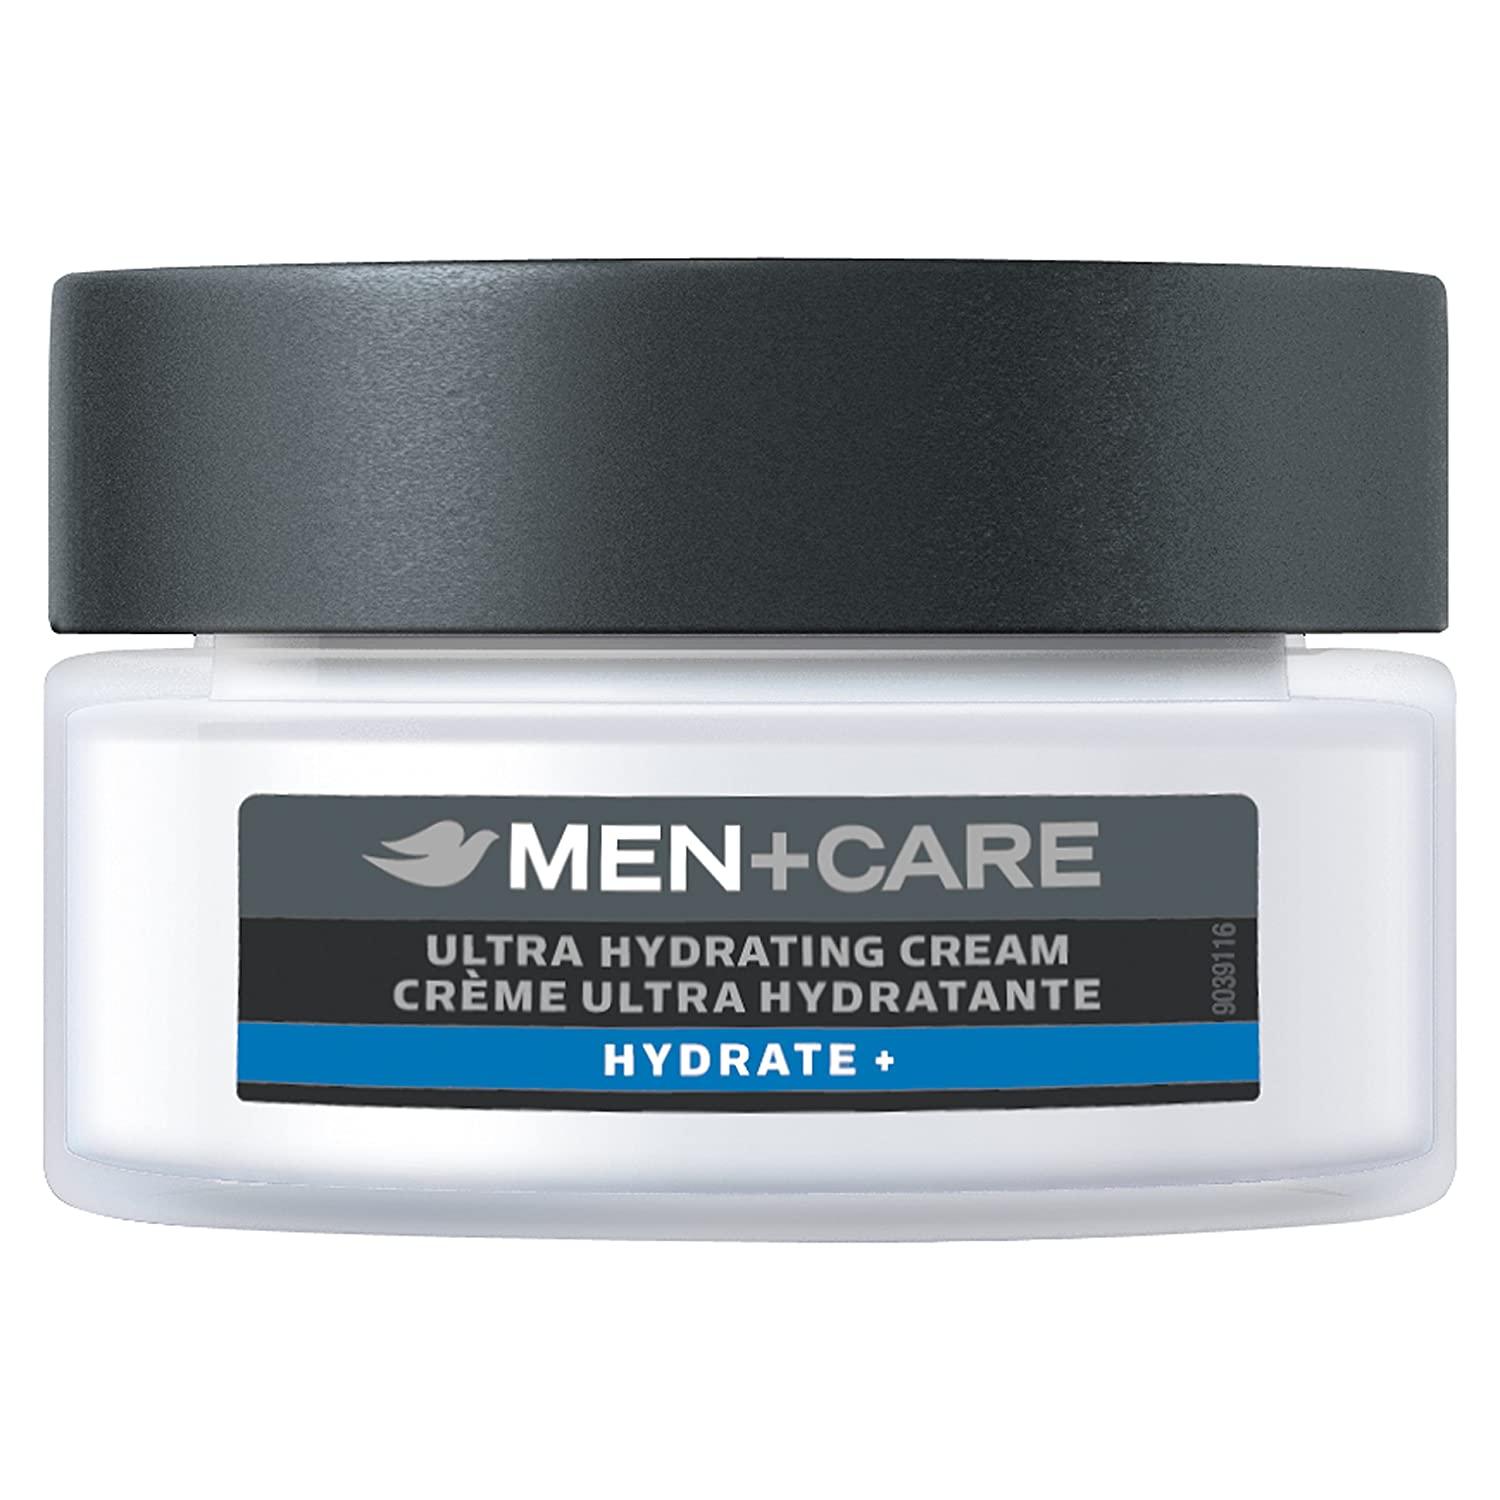 Men+Care Cream Hydrate Plus, Ultra Hydrating